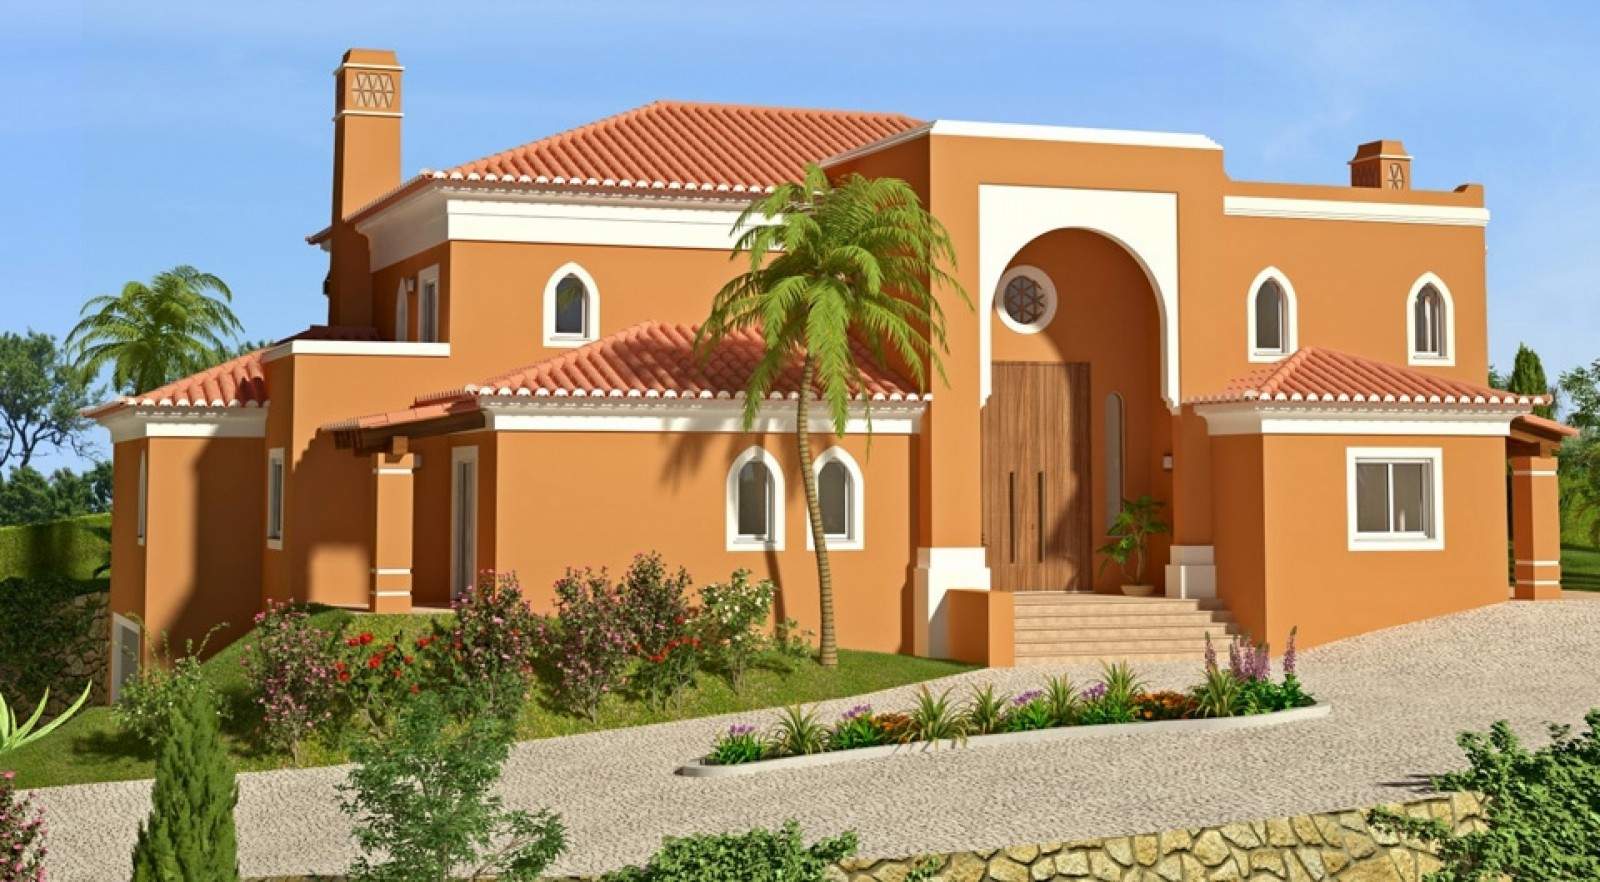 Terreno urbano con proyecto aprobado, en venta, en Lagos, Algarve_208844